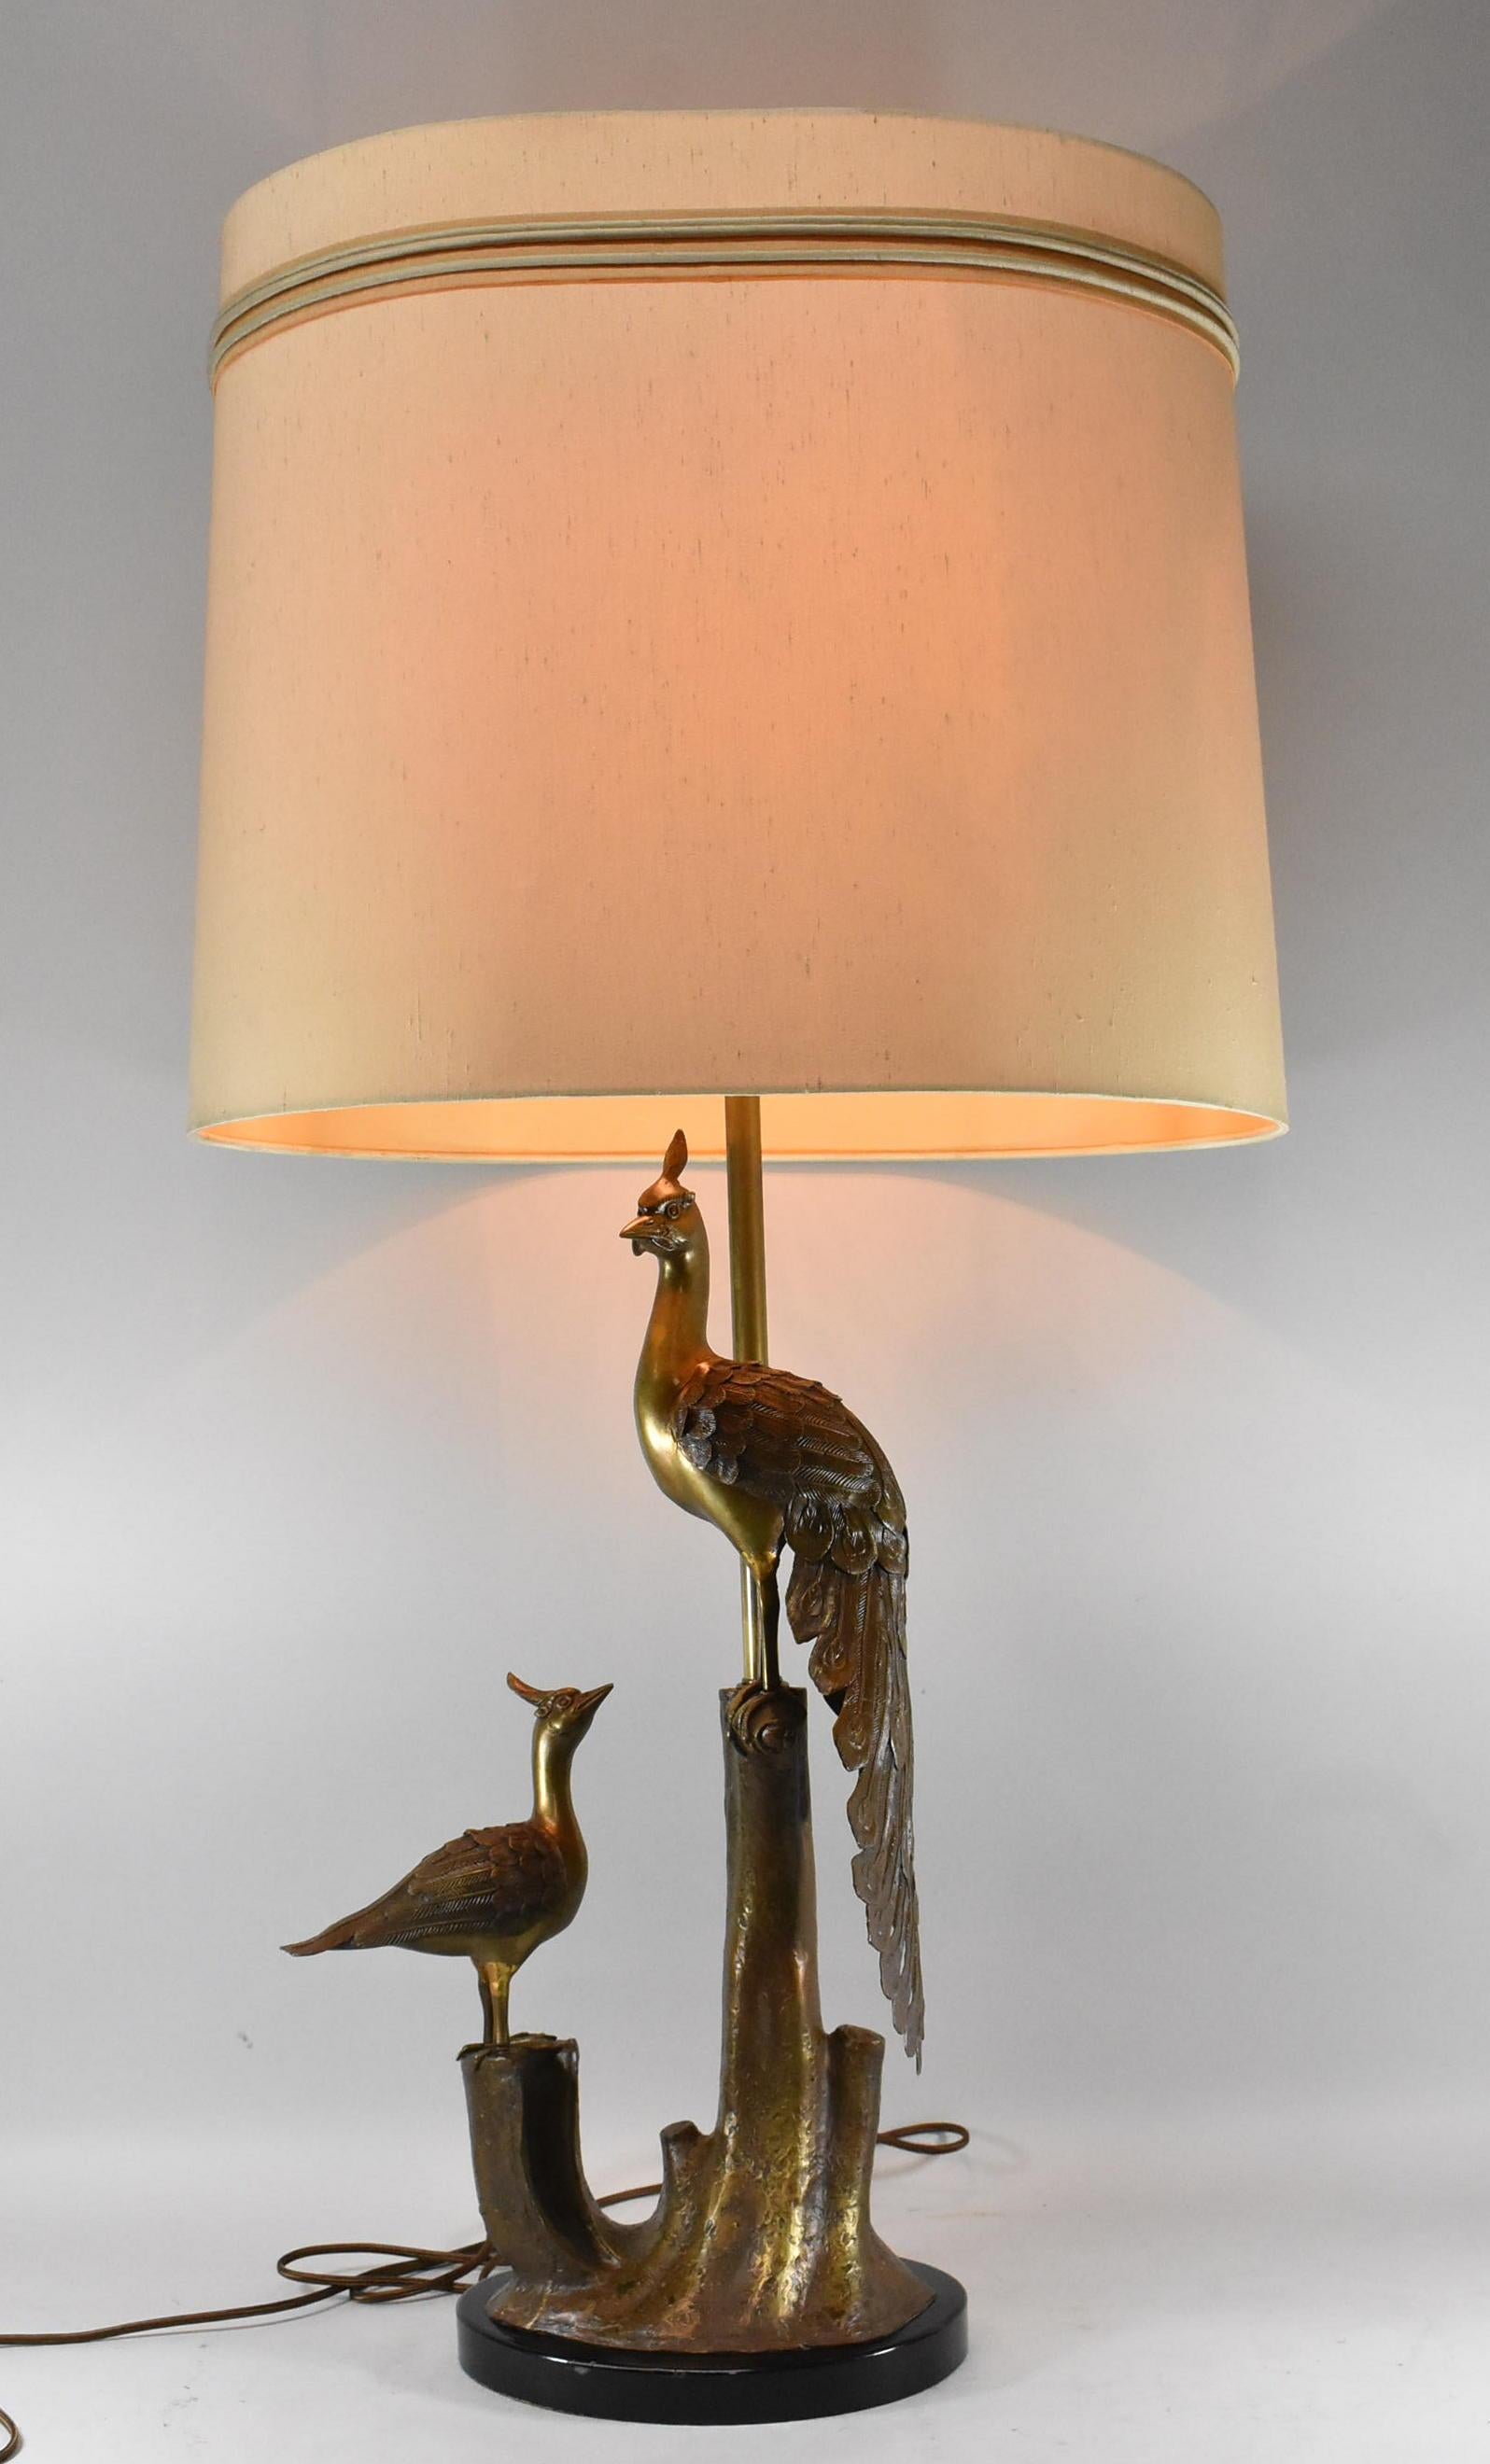 Tischlampe aus Bronze mit zwei Pfauen, die auf einem Baumstumpf sitzen. Wunderschön strukturierte Details in Federn und Baumrinde. Die Lampe ist neu verkabelt. Der Lampenschirm ist nicht enthalten.